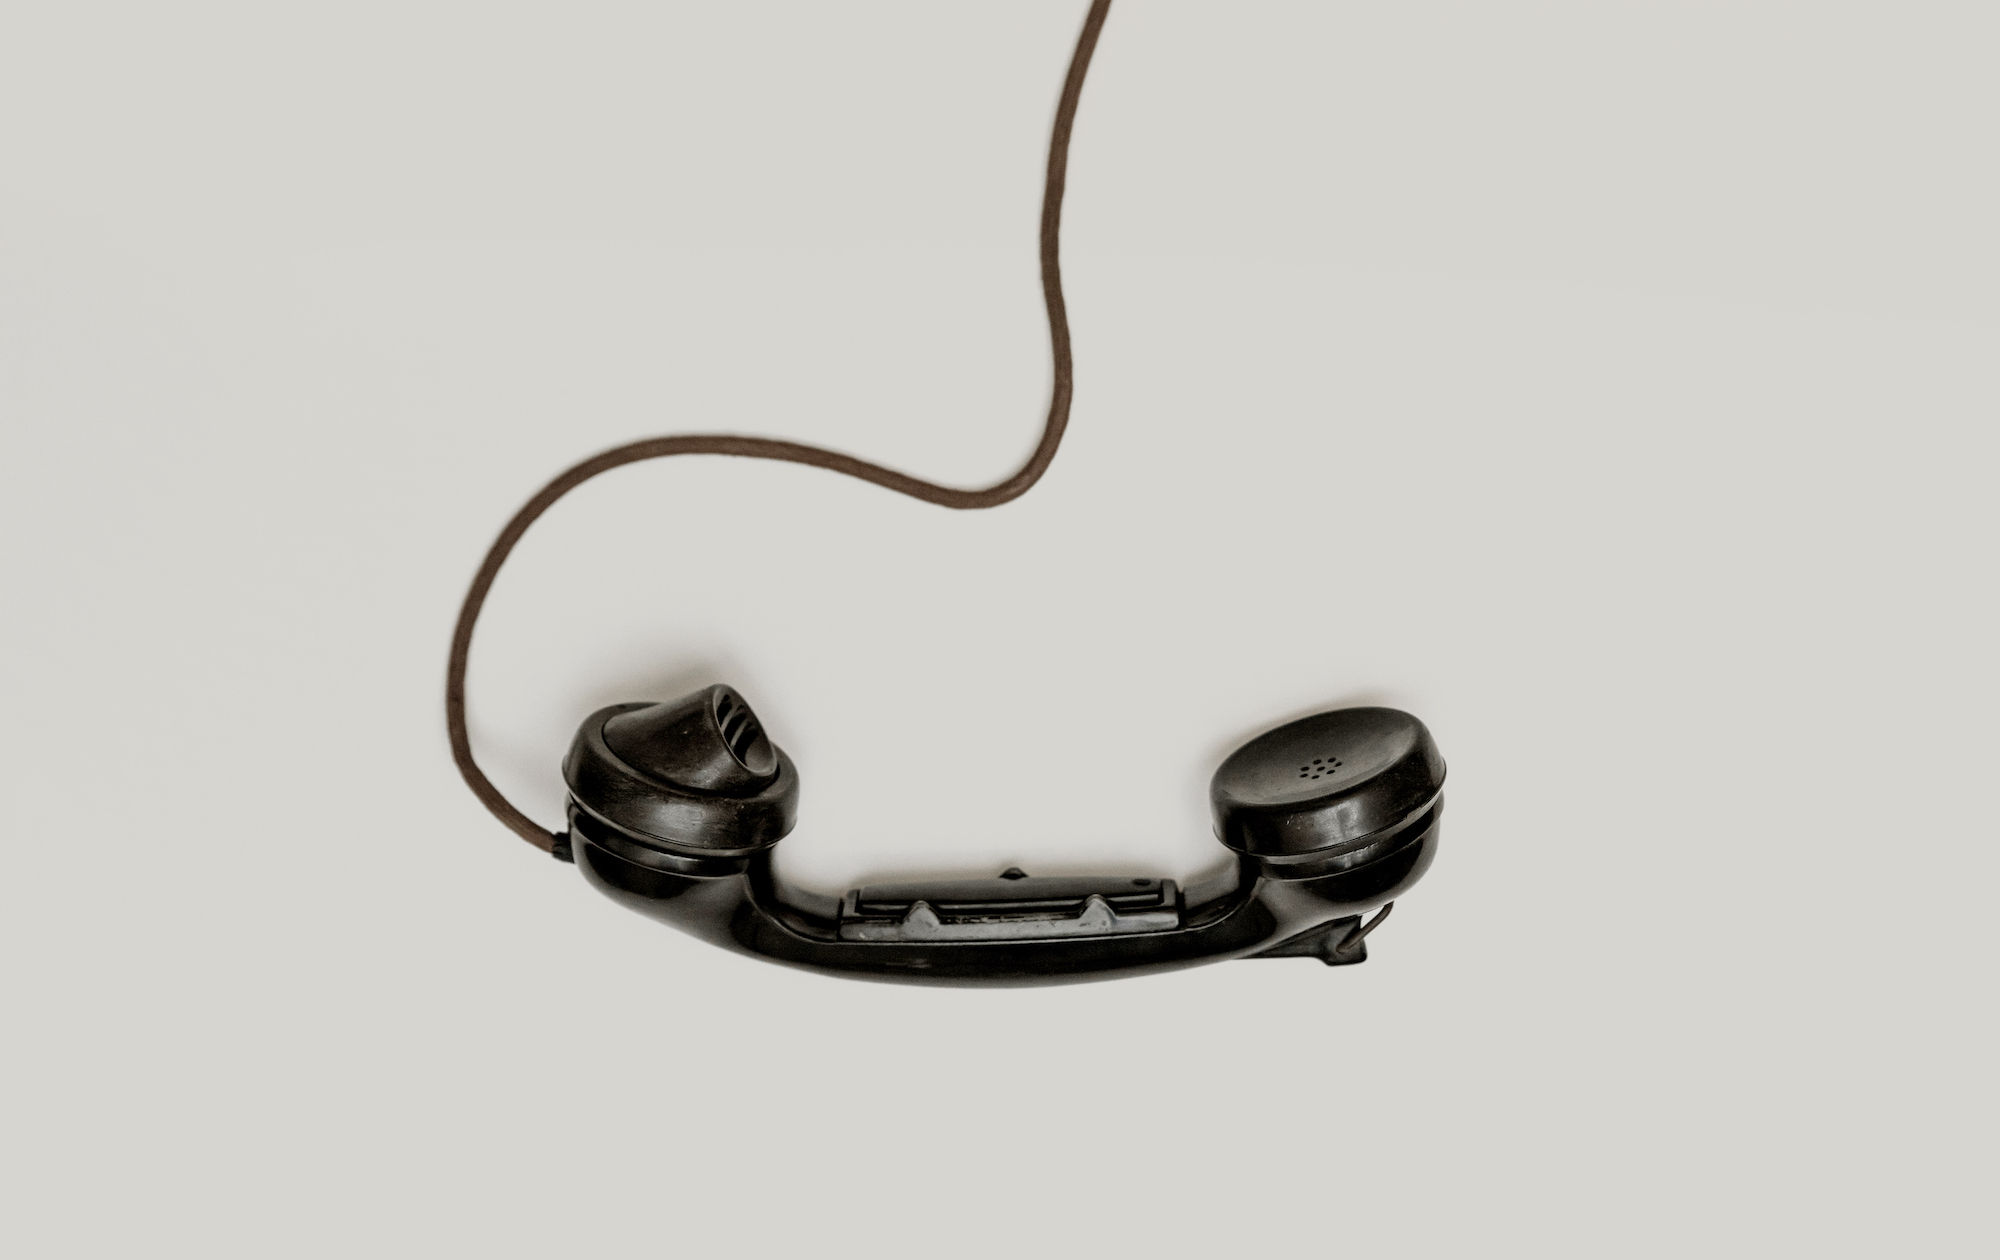 «Ukrtelekom» pojednaje stacionarni telefony z mobiľnymy možlyvostjamy